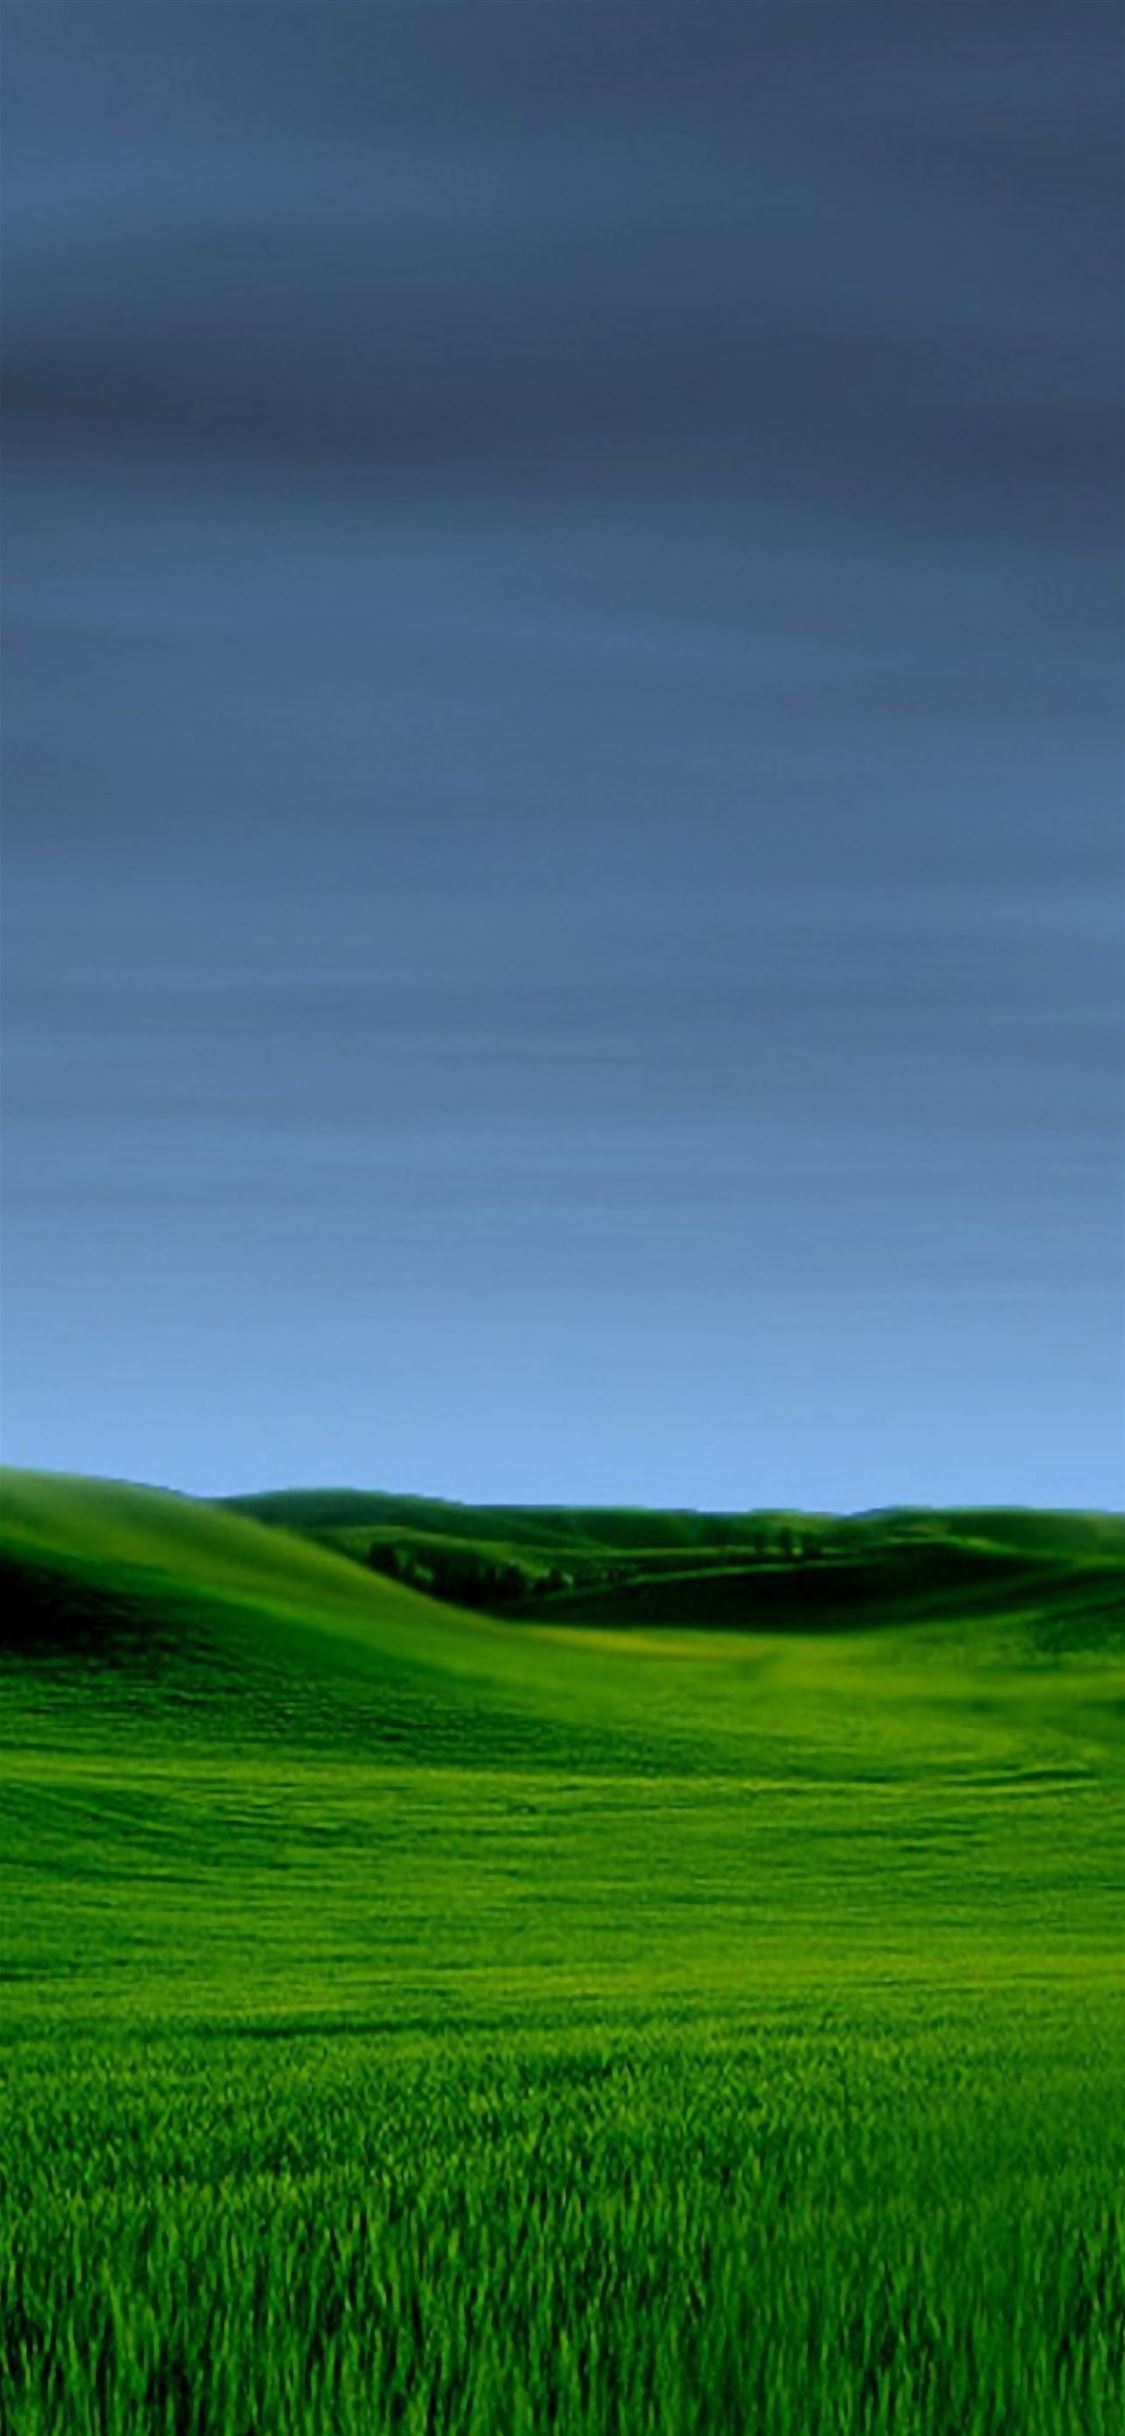 Grass iPhone wallpaper 